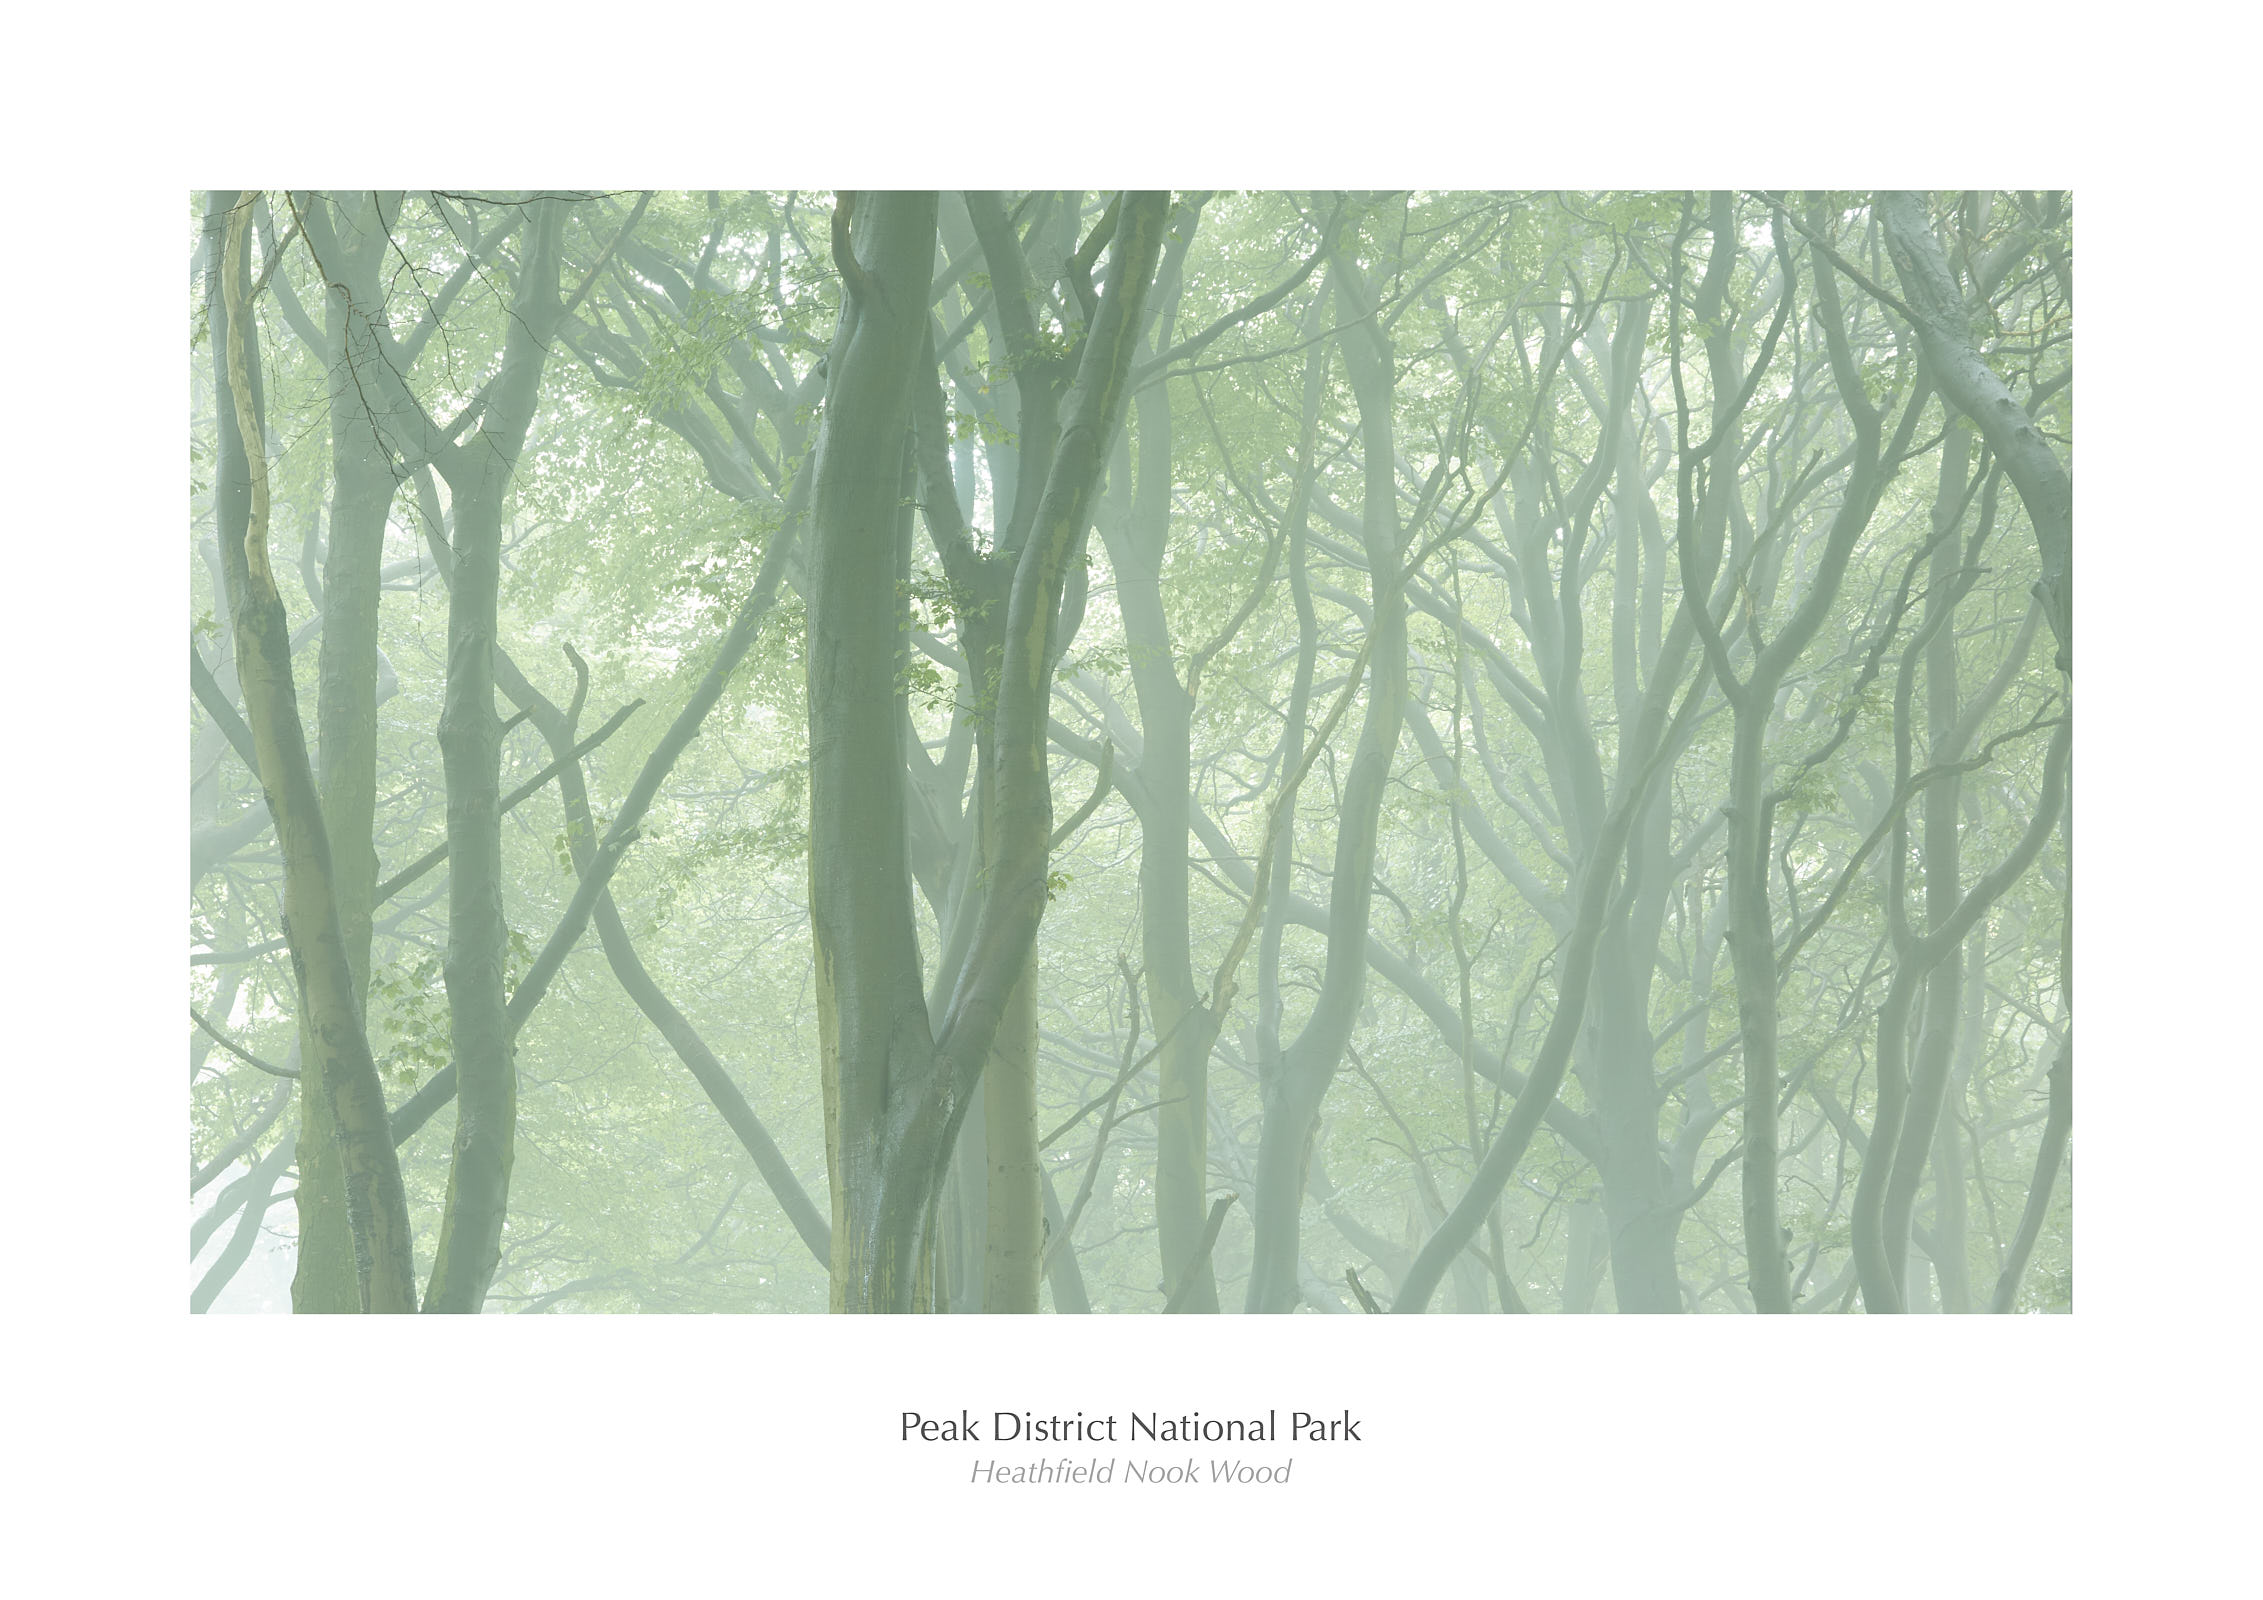 Heathfield Nook Wood